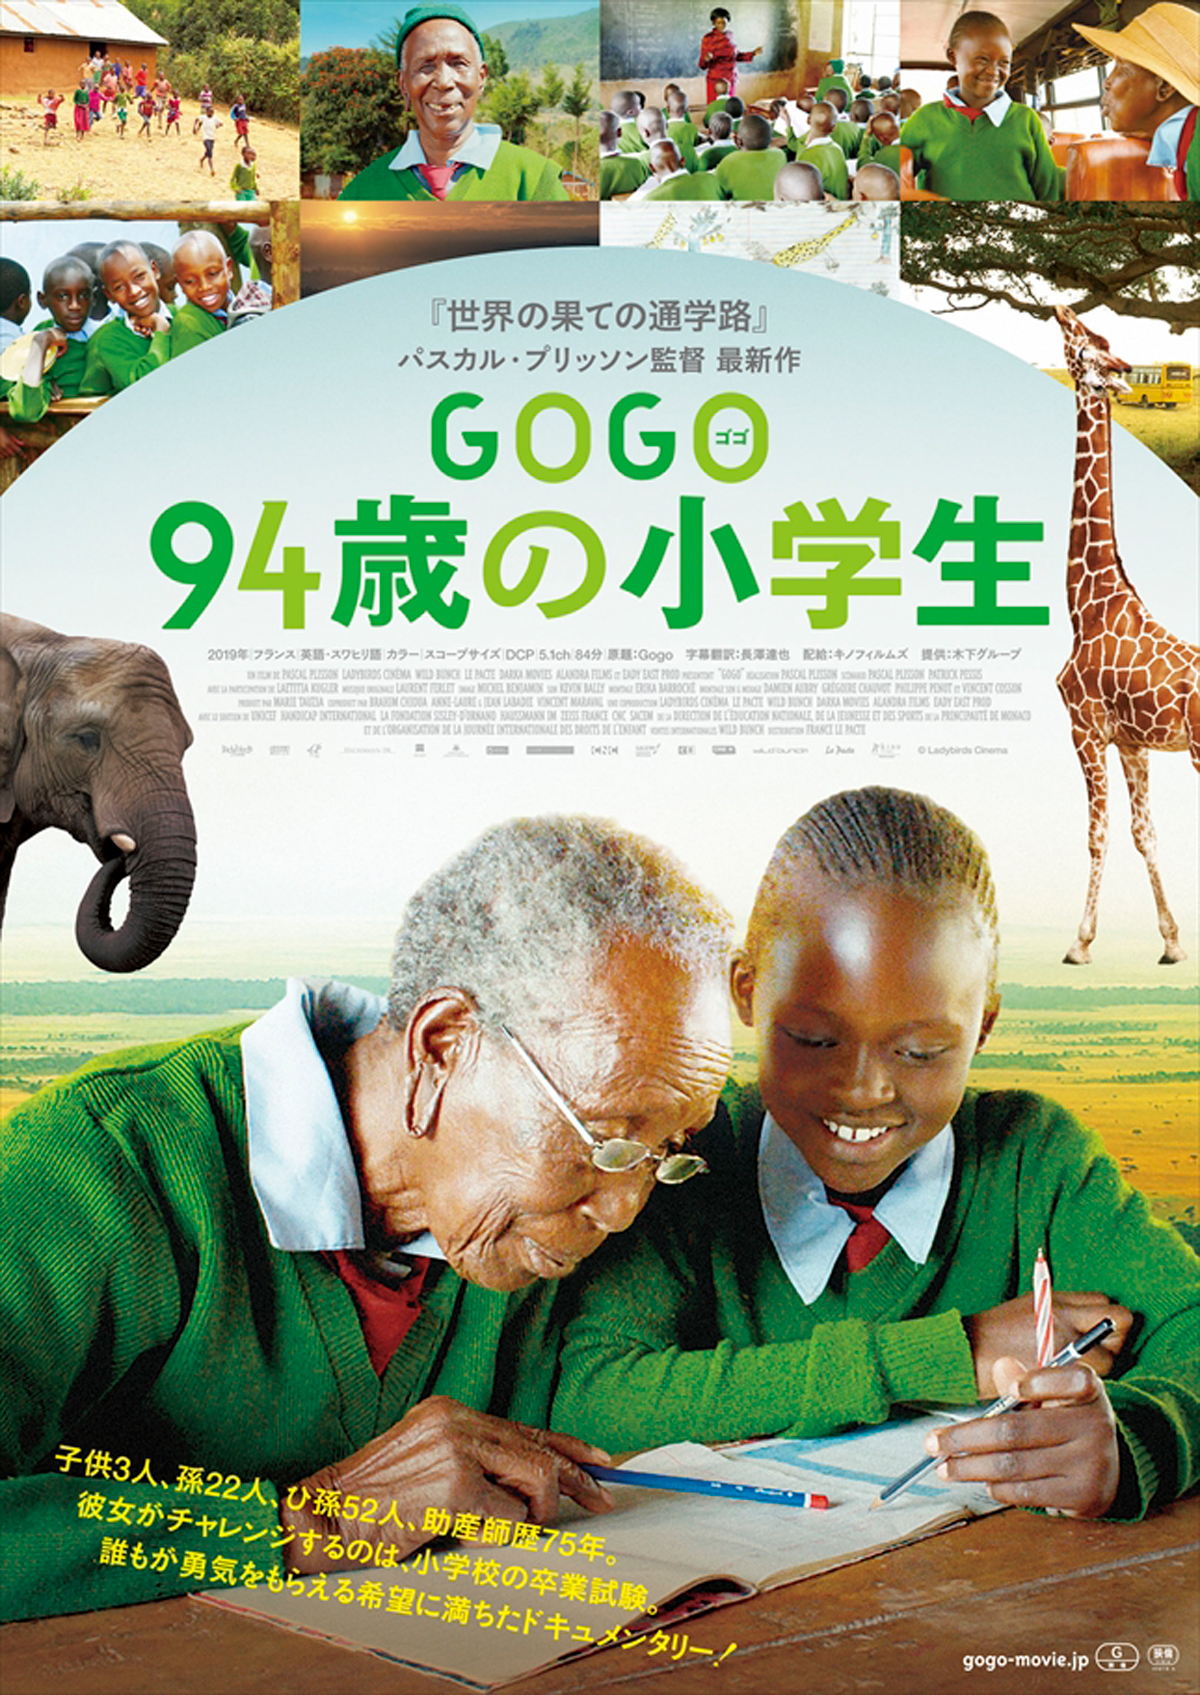 GOGO（ゴゴ）　94歳の小学生の画像